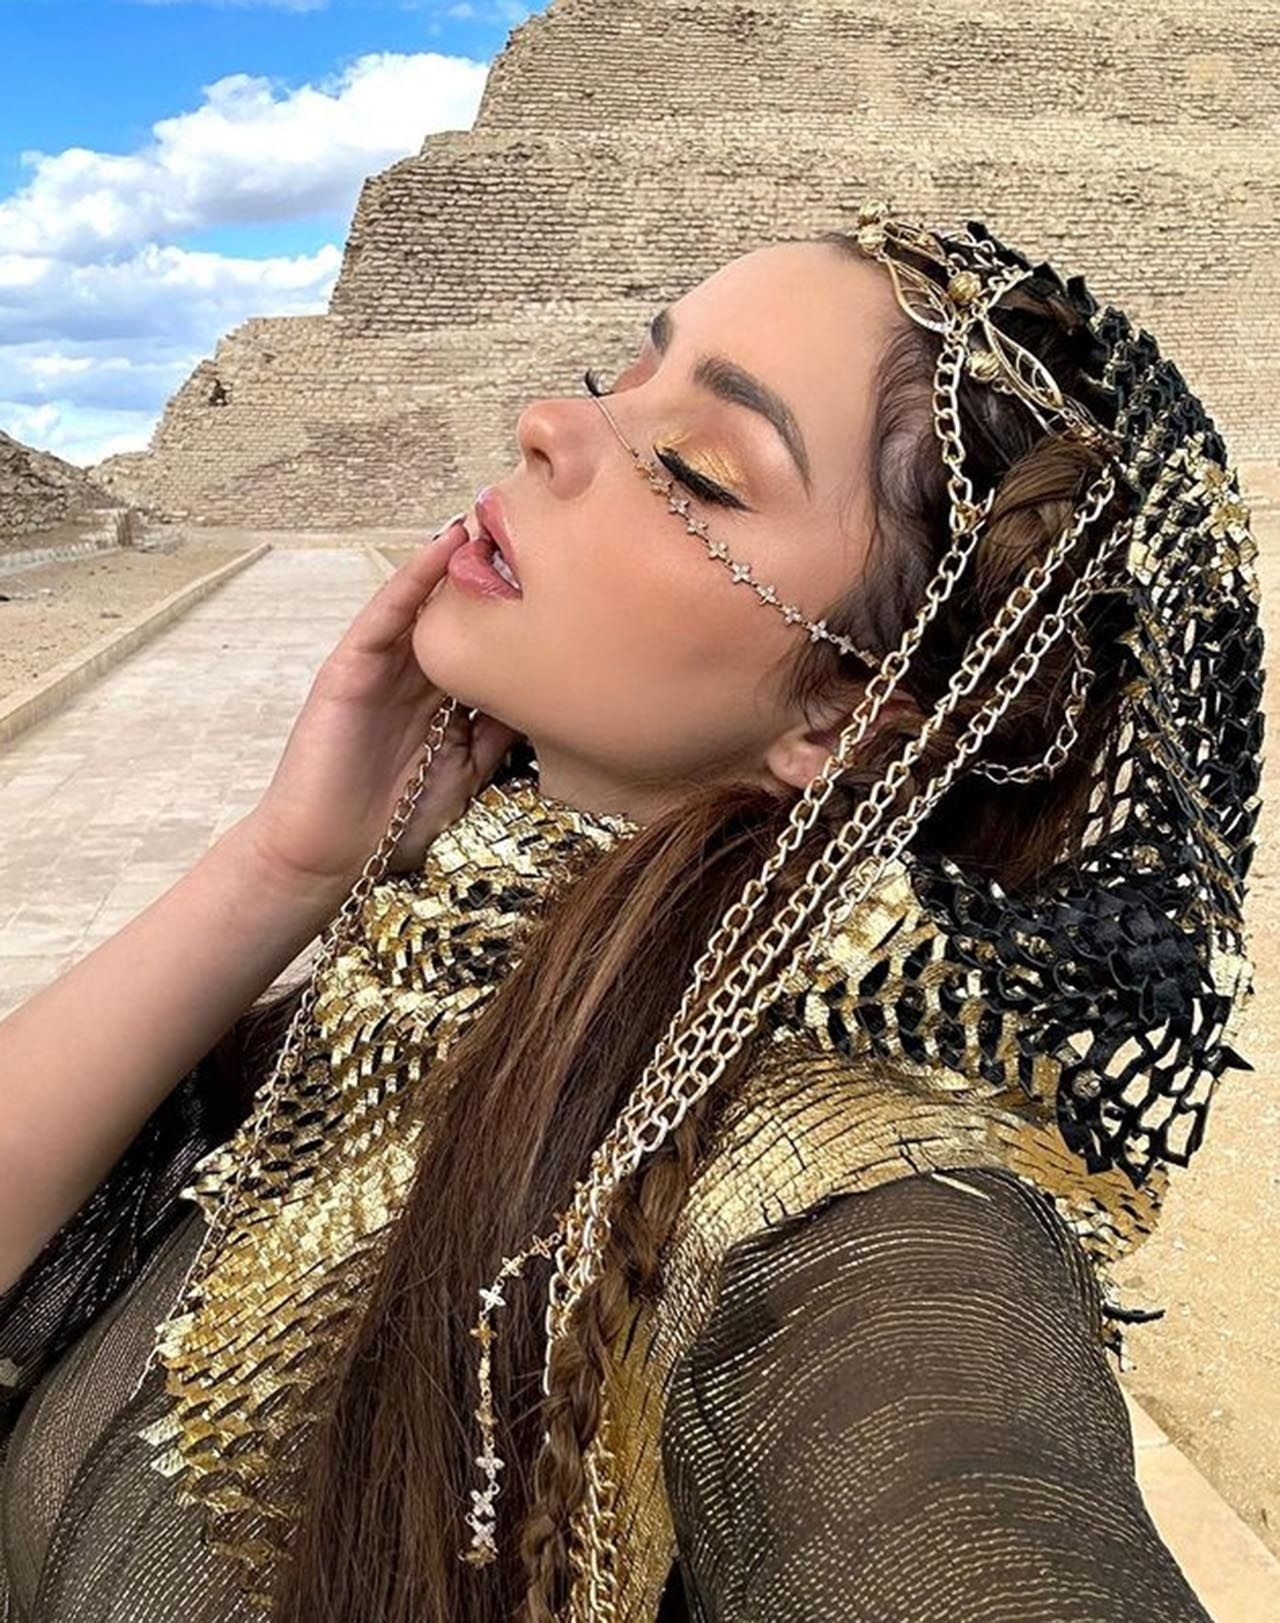 Ünlü model Demi Rose'un cesur pozları Mısır'ı ayağa kaldırdı - Resim: 11